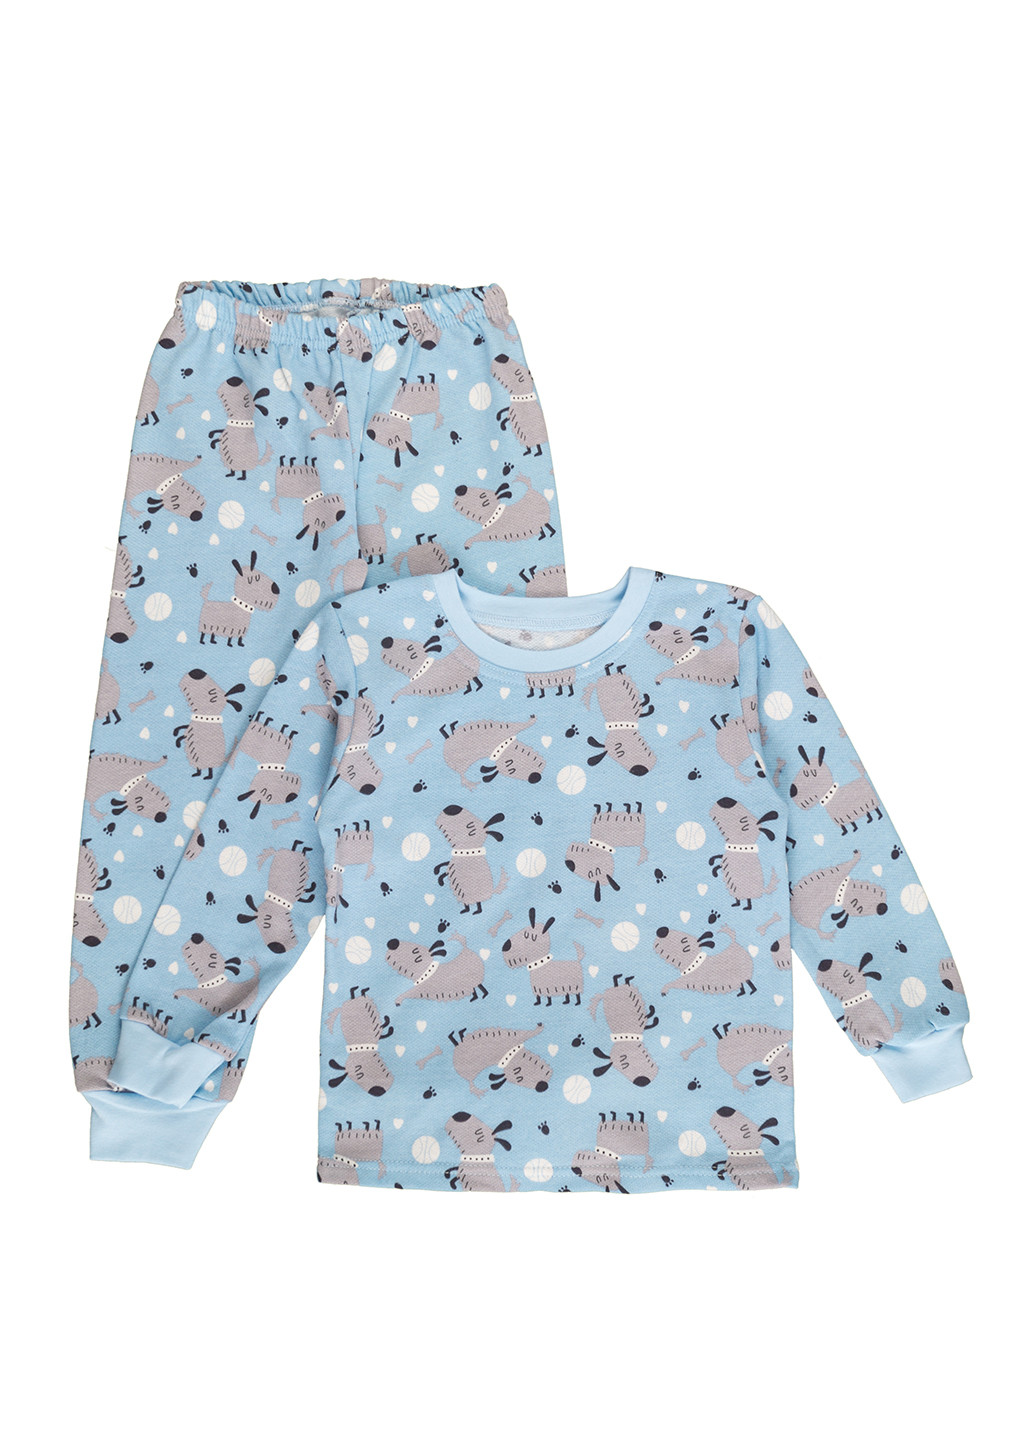 Голубая всесезон пижама для мальчика утепленная кофта + брюки Фламинго Текстиль